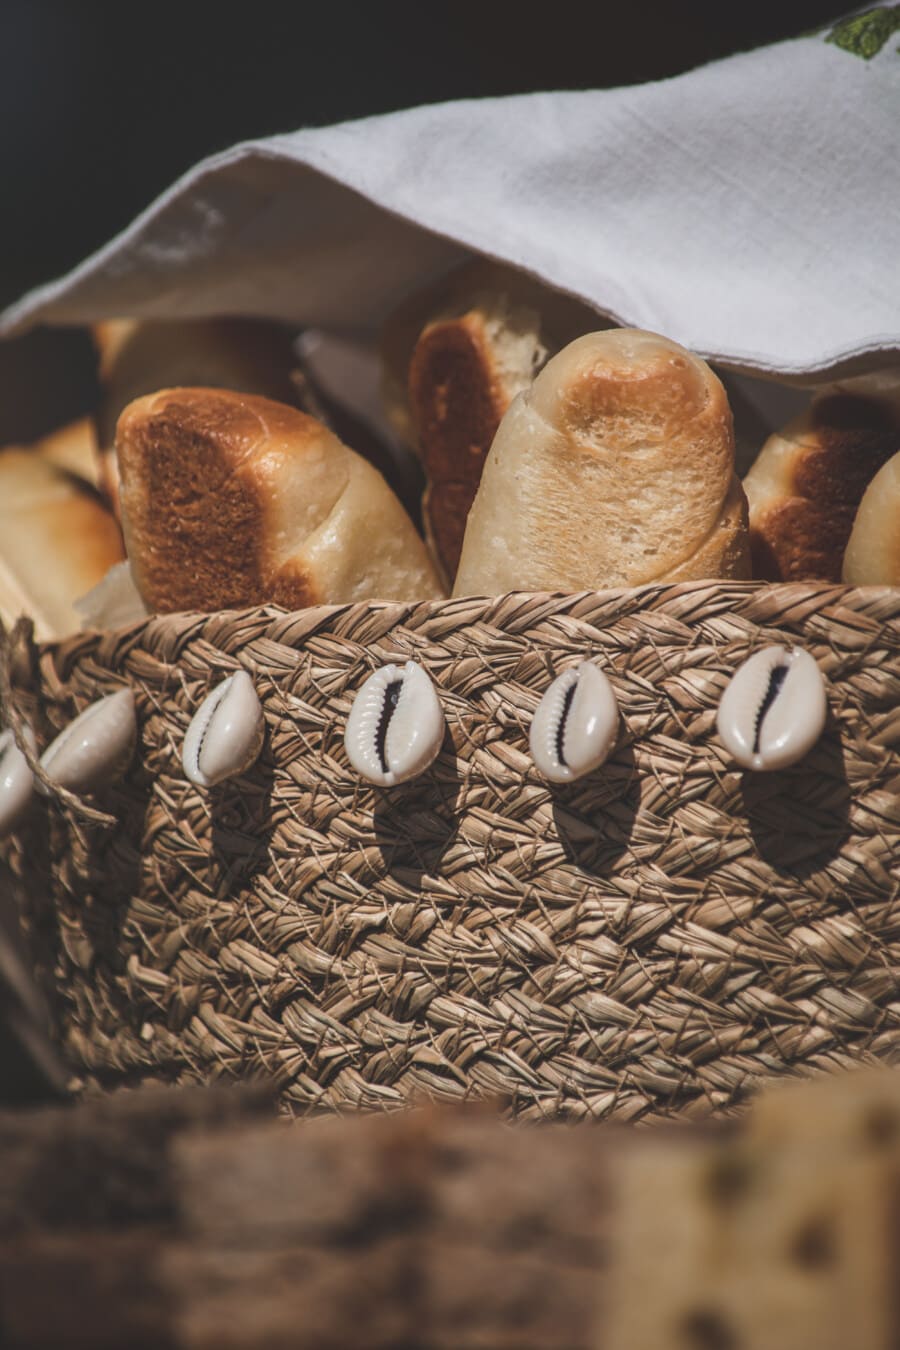 zelfgemaakte, volkorenbrood, brood, traditionele, rieten mand, zeeschelp, decoratie, voedsel, stilleven, natuur